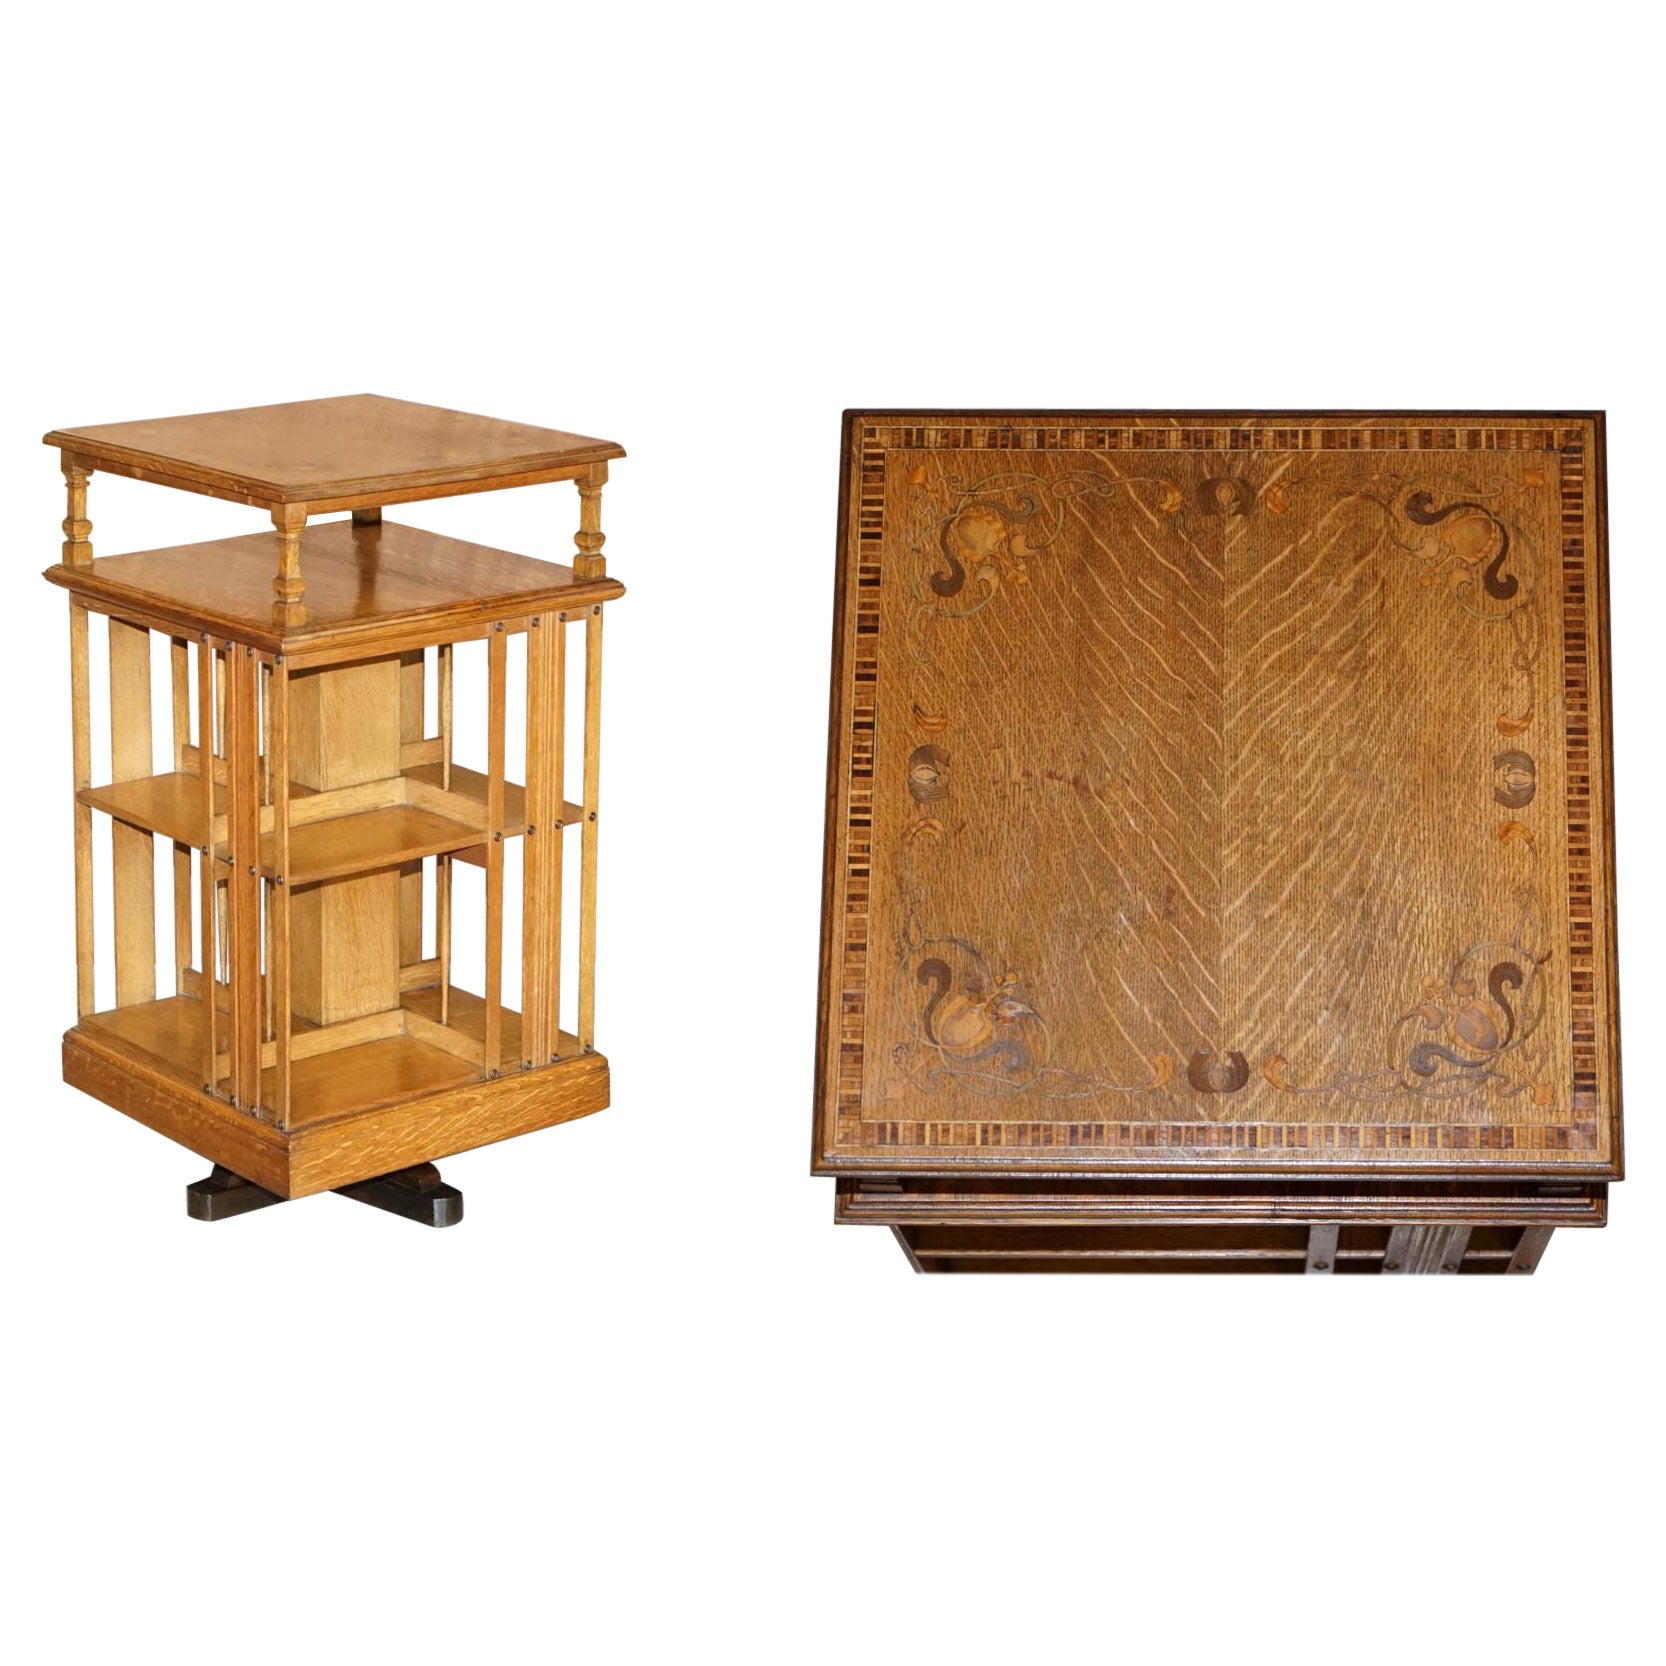 Très rare table d'appoint bibliothèque tournante Art Nouveau en chêne et échantillons de bois incrustés